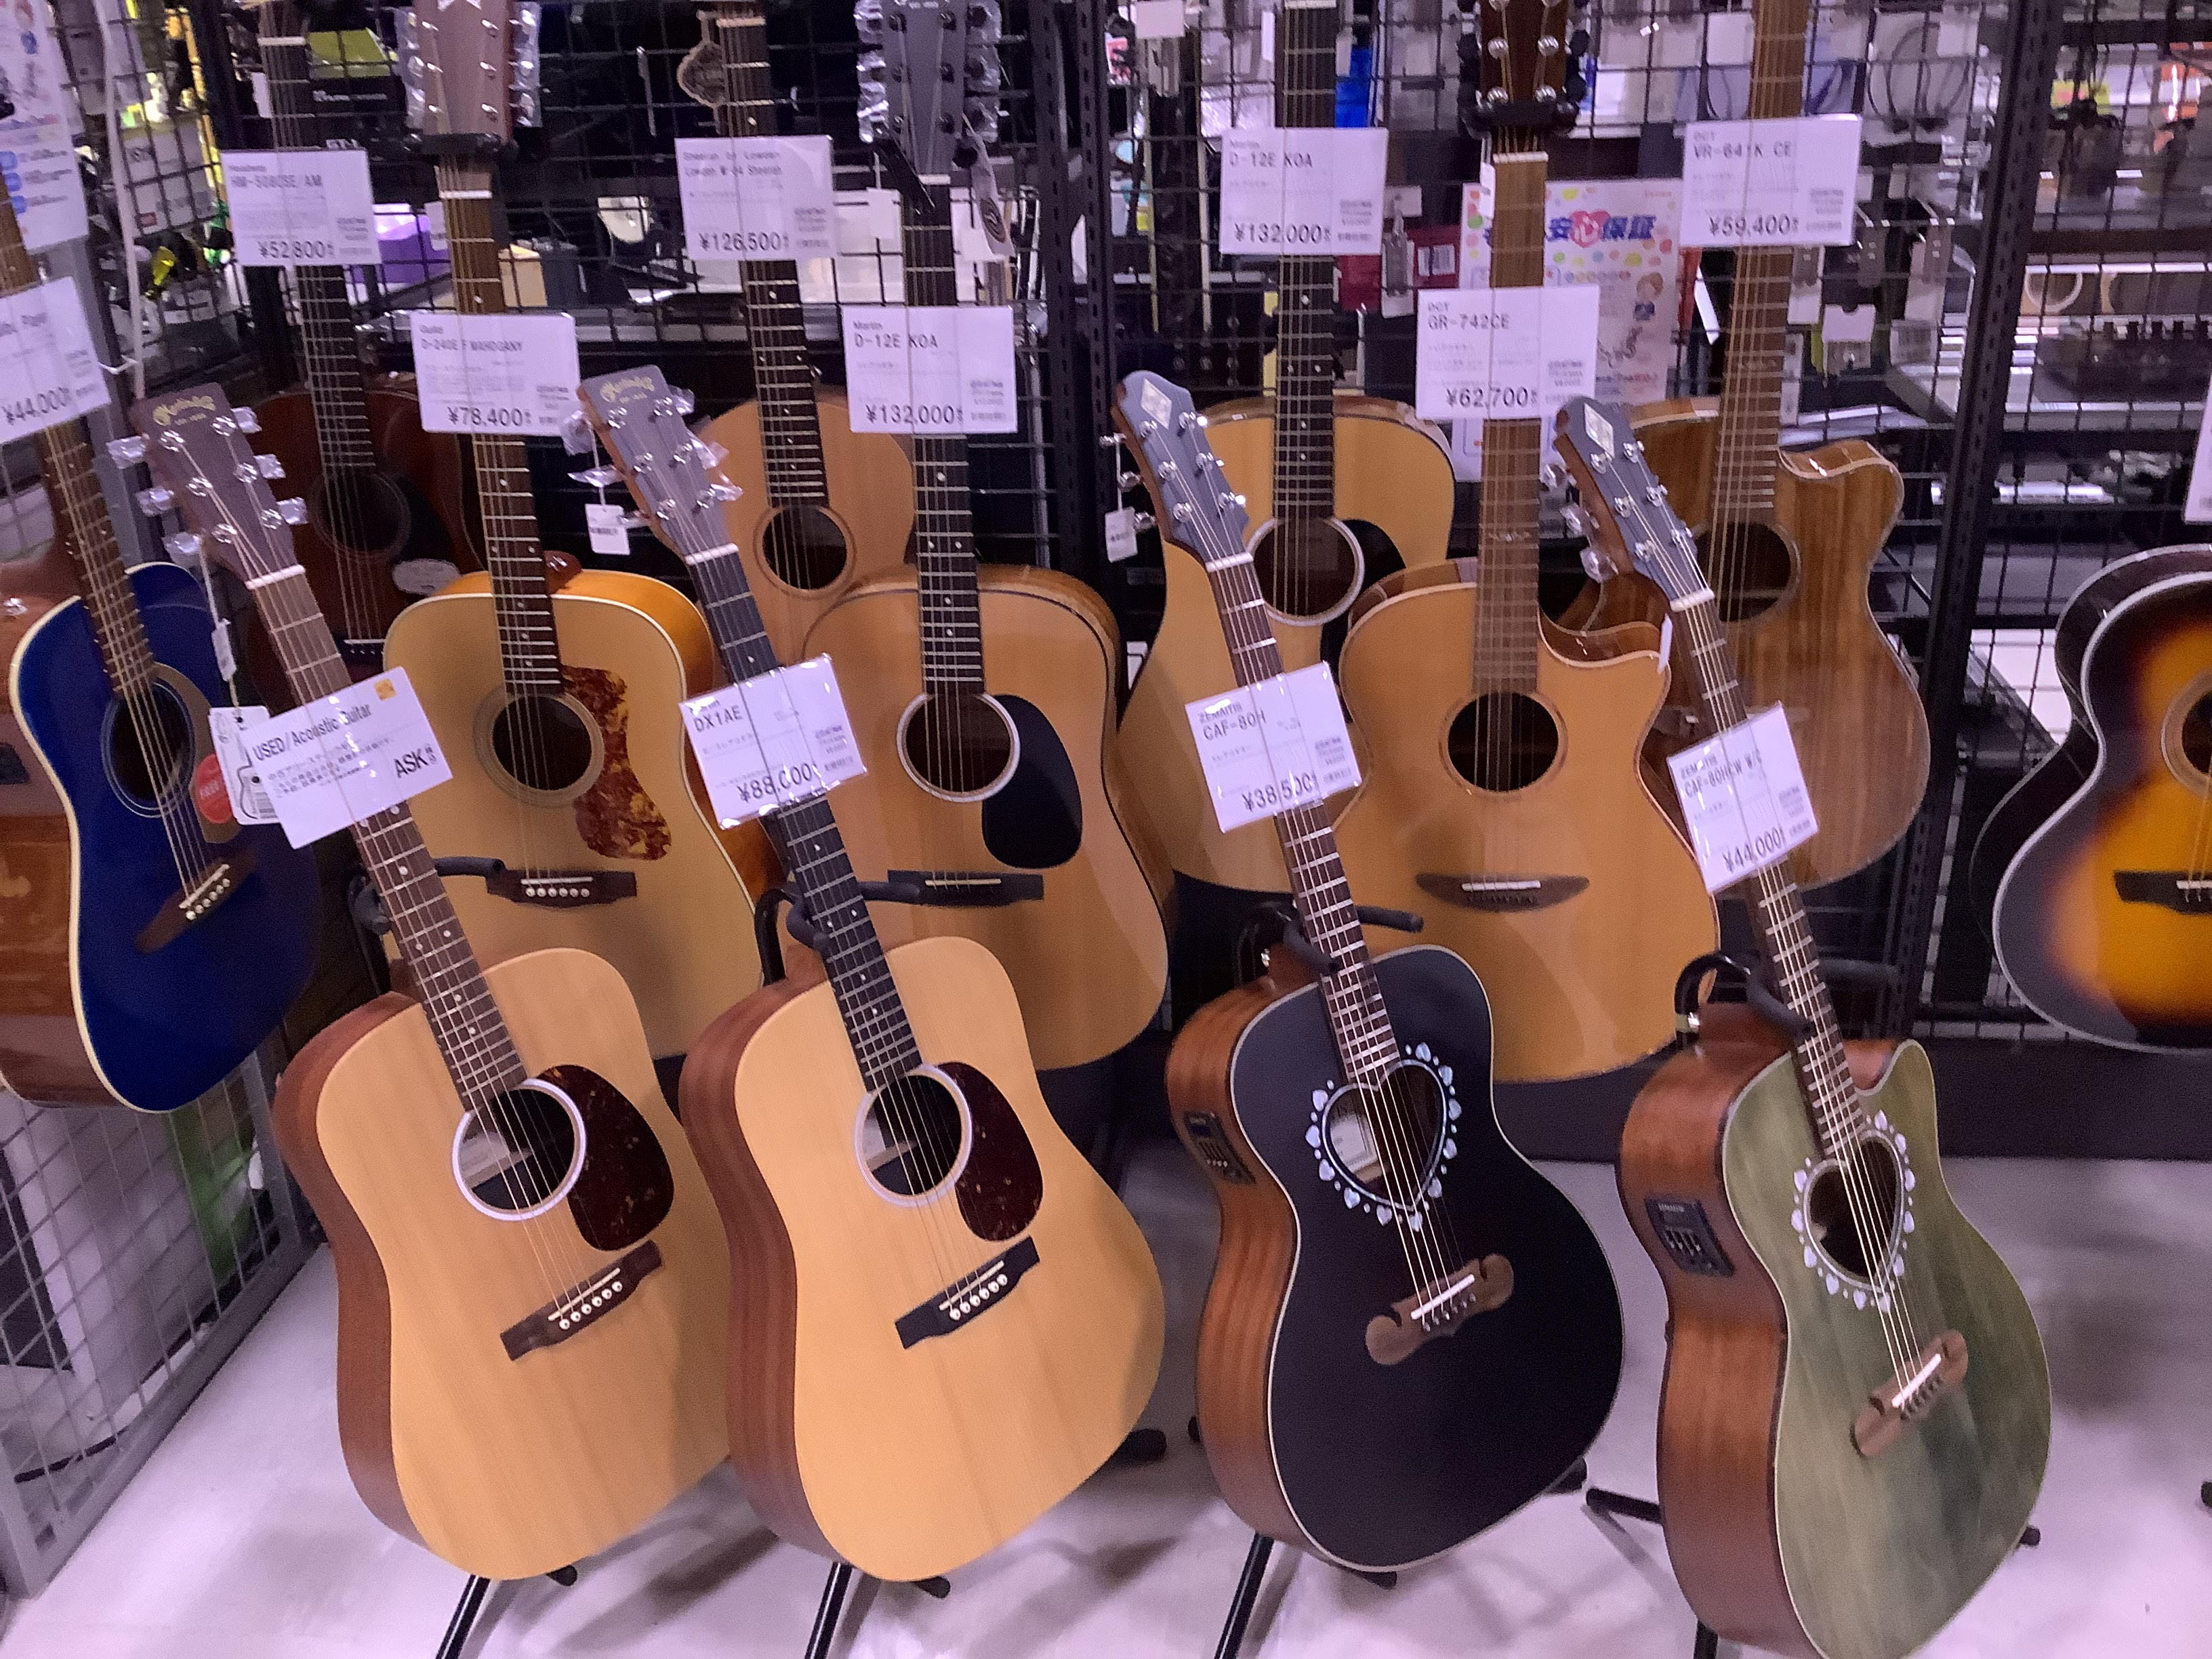 現在、島村楽器成田ボンベルタ店にはアコースティックギターのOUTLET商品が多数入荷しています！ これからギターを始めたい方はもちろん、セカンドギターをお求めの方などにもおススメです！！ 幅広いメーカーのラインナップです！→【Martin,Guild,Sheeran by Lowden,Fender […]